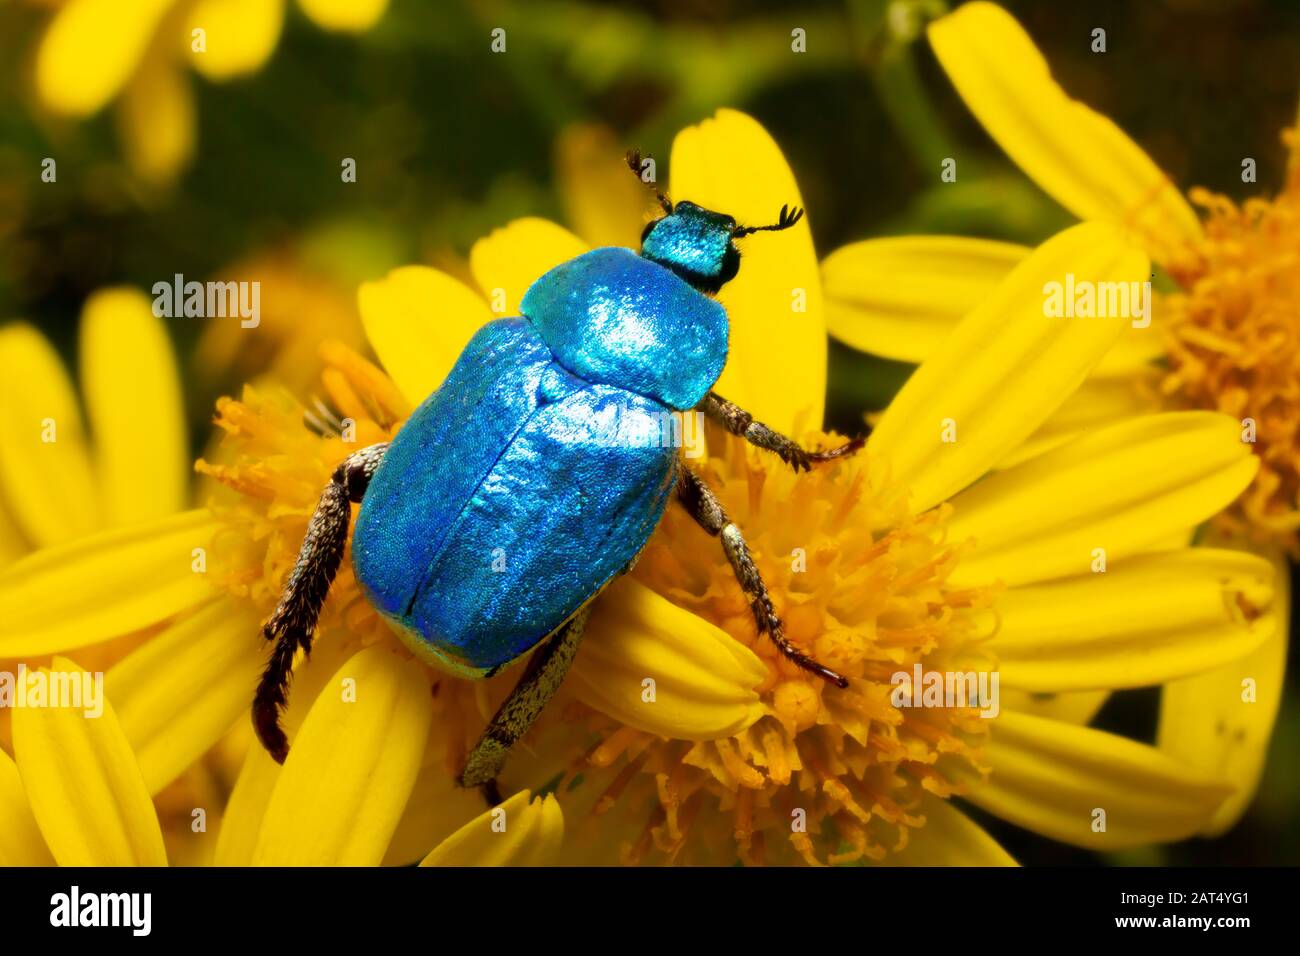 Le bleu irisé du scarabée (hopia coerulea) scintille en contraste avec le jaune des fleurs ragotées qu'il surmonte. Banque D'Images